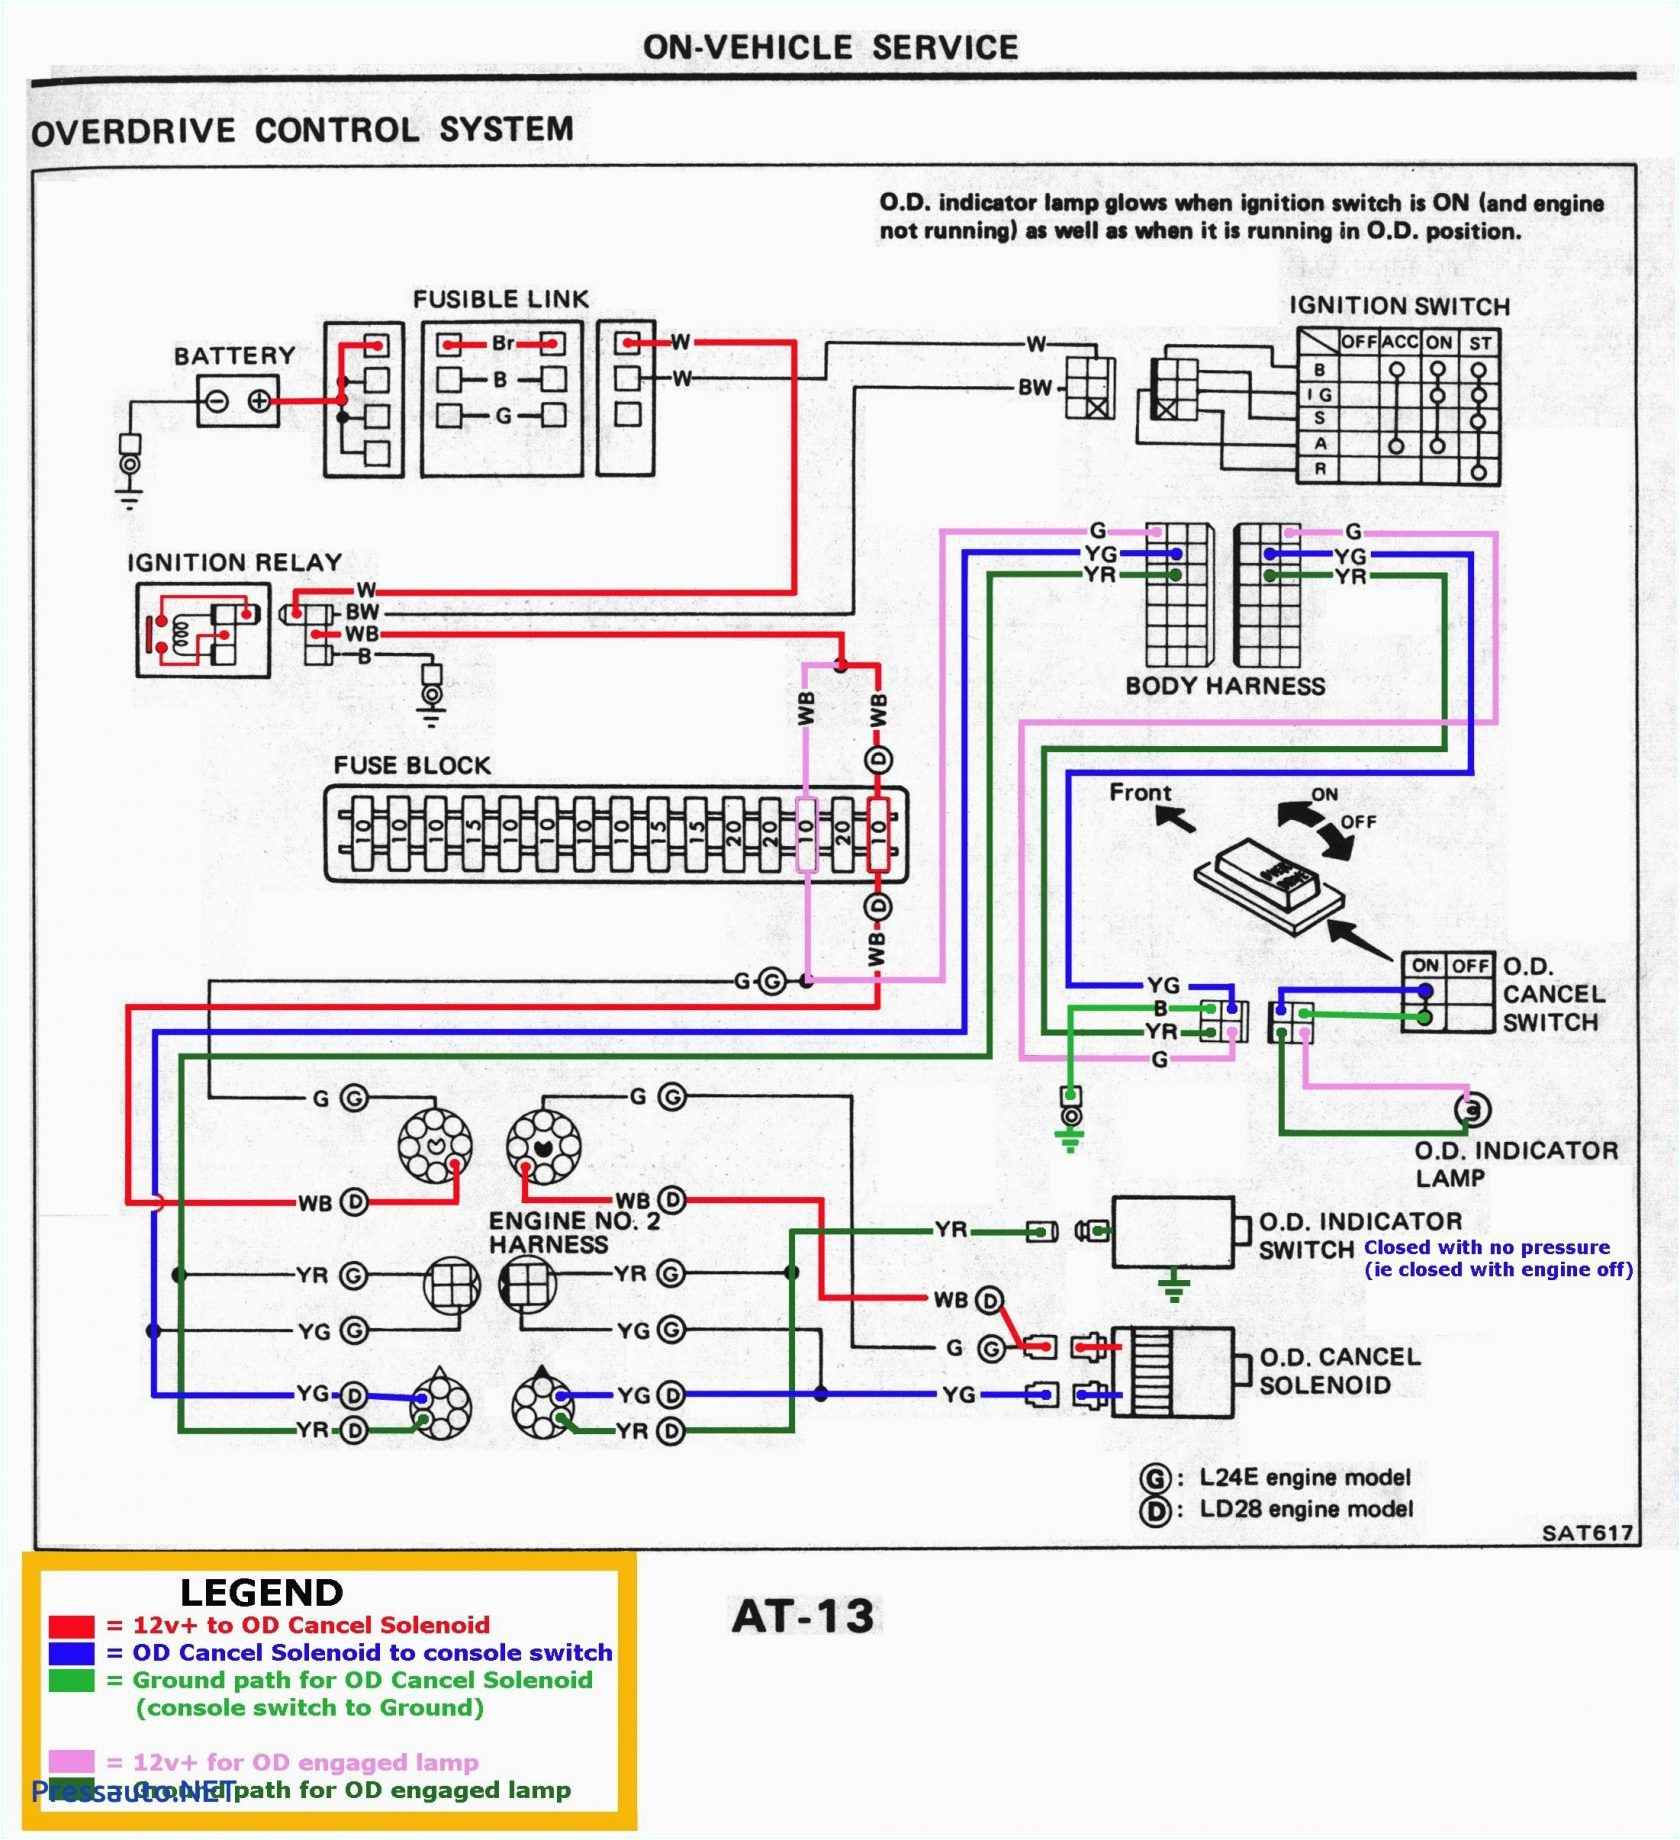 barrett wiring diagram wiring diagram schematic barrett trailer wiring diagram barrett wiring diagram